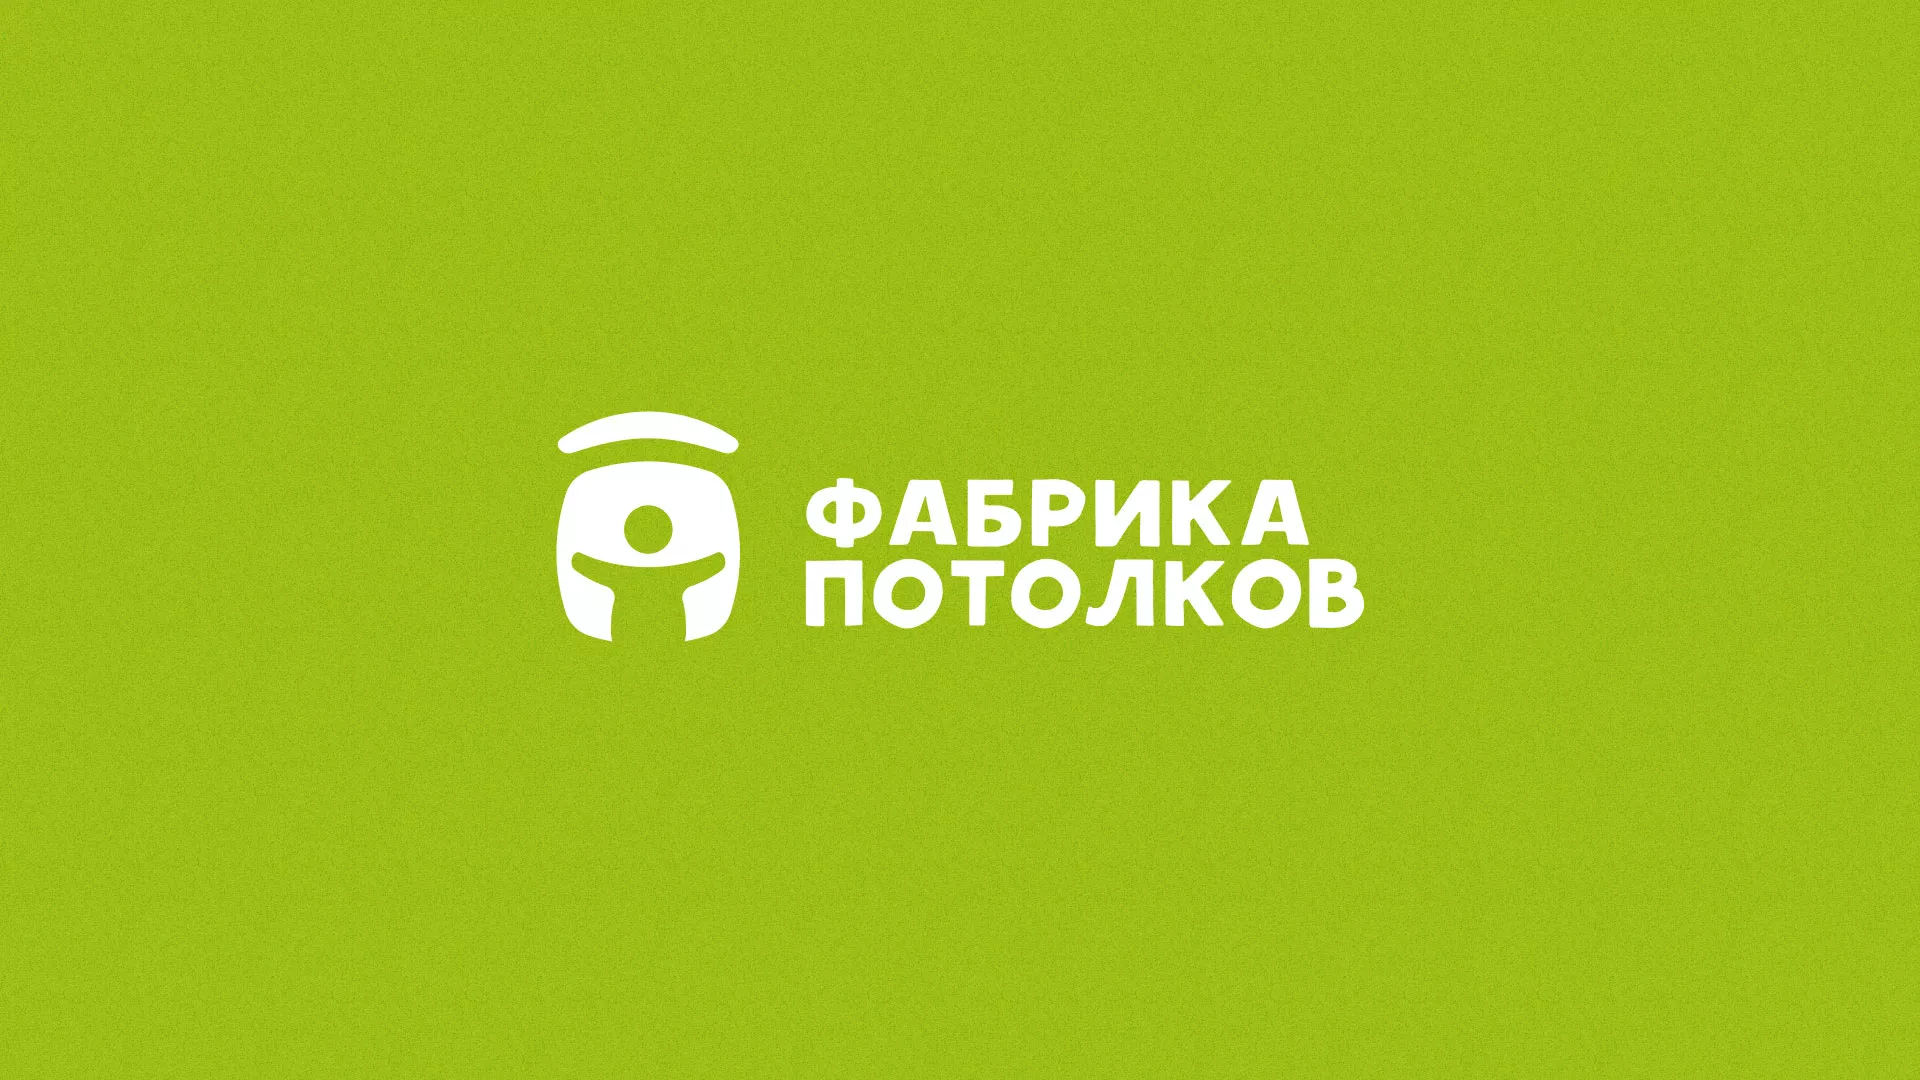 Разработка логотипа для производства натяжных потолков в Мариинске